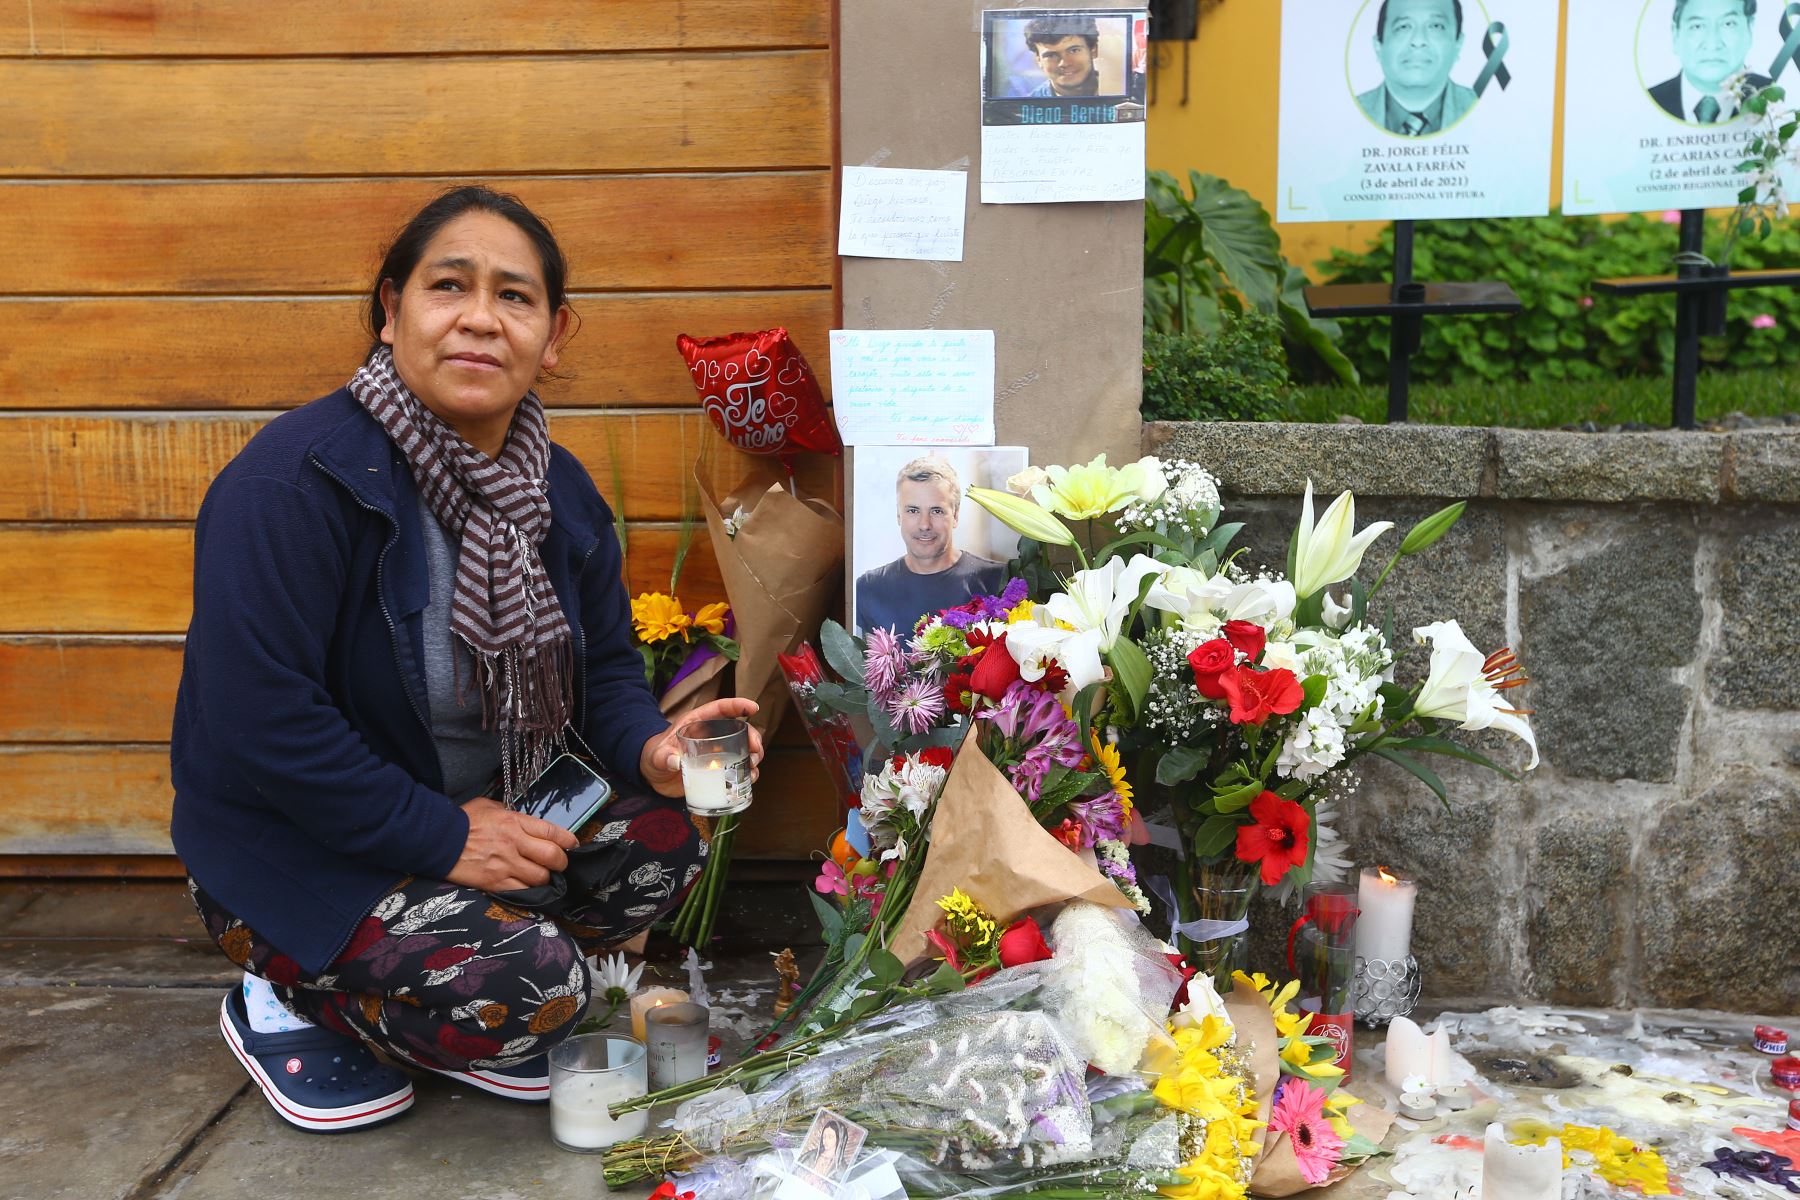 Con flores, tarjetas y mensajes de amor, fans del fallecido actor Diego Bertie le rinden homenaje en la entrada de su domicilio ubicado en el Malecón de la Reserva, en Miraflores.
Foto: ANDINA/Eddy Ramos